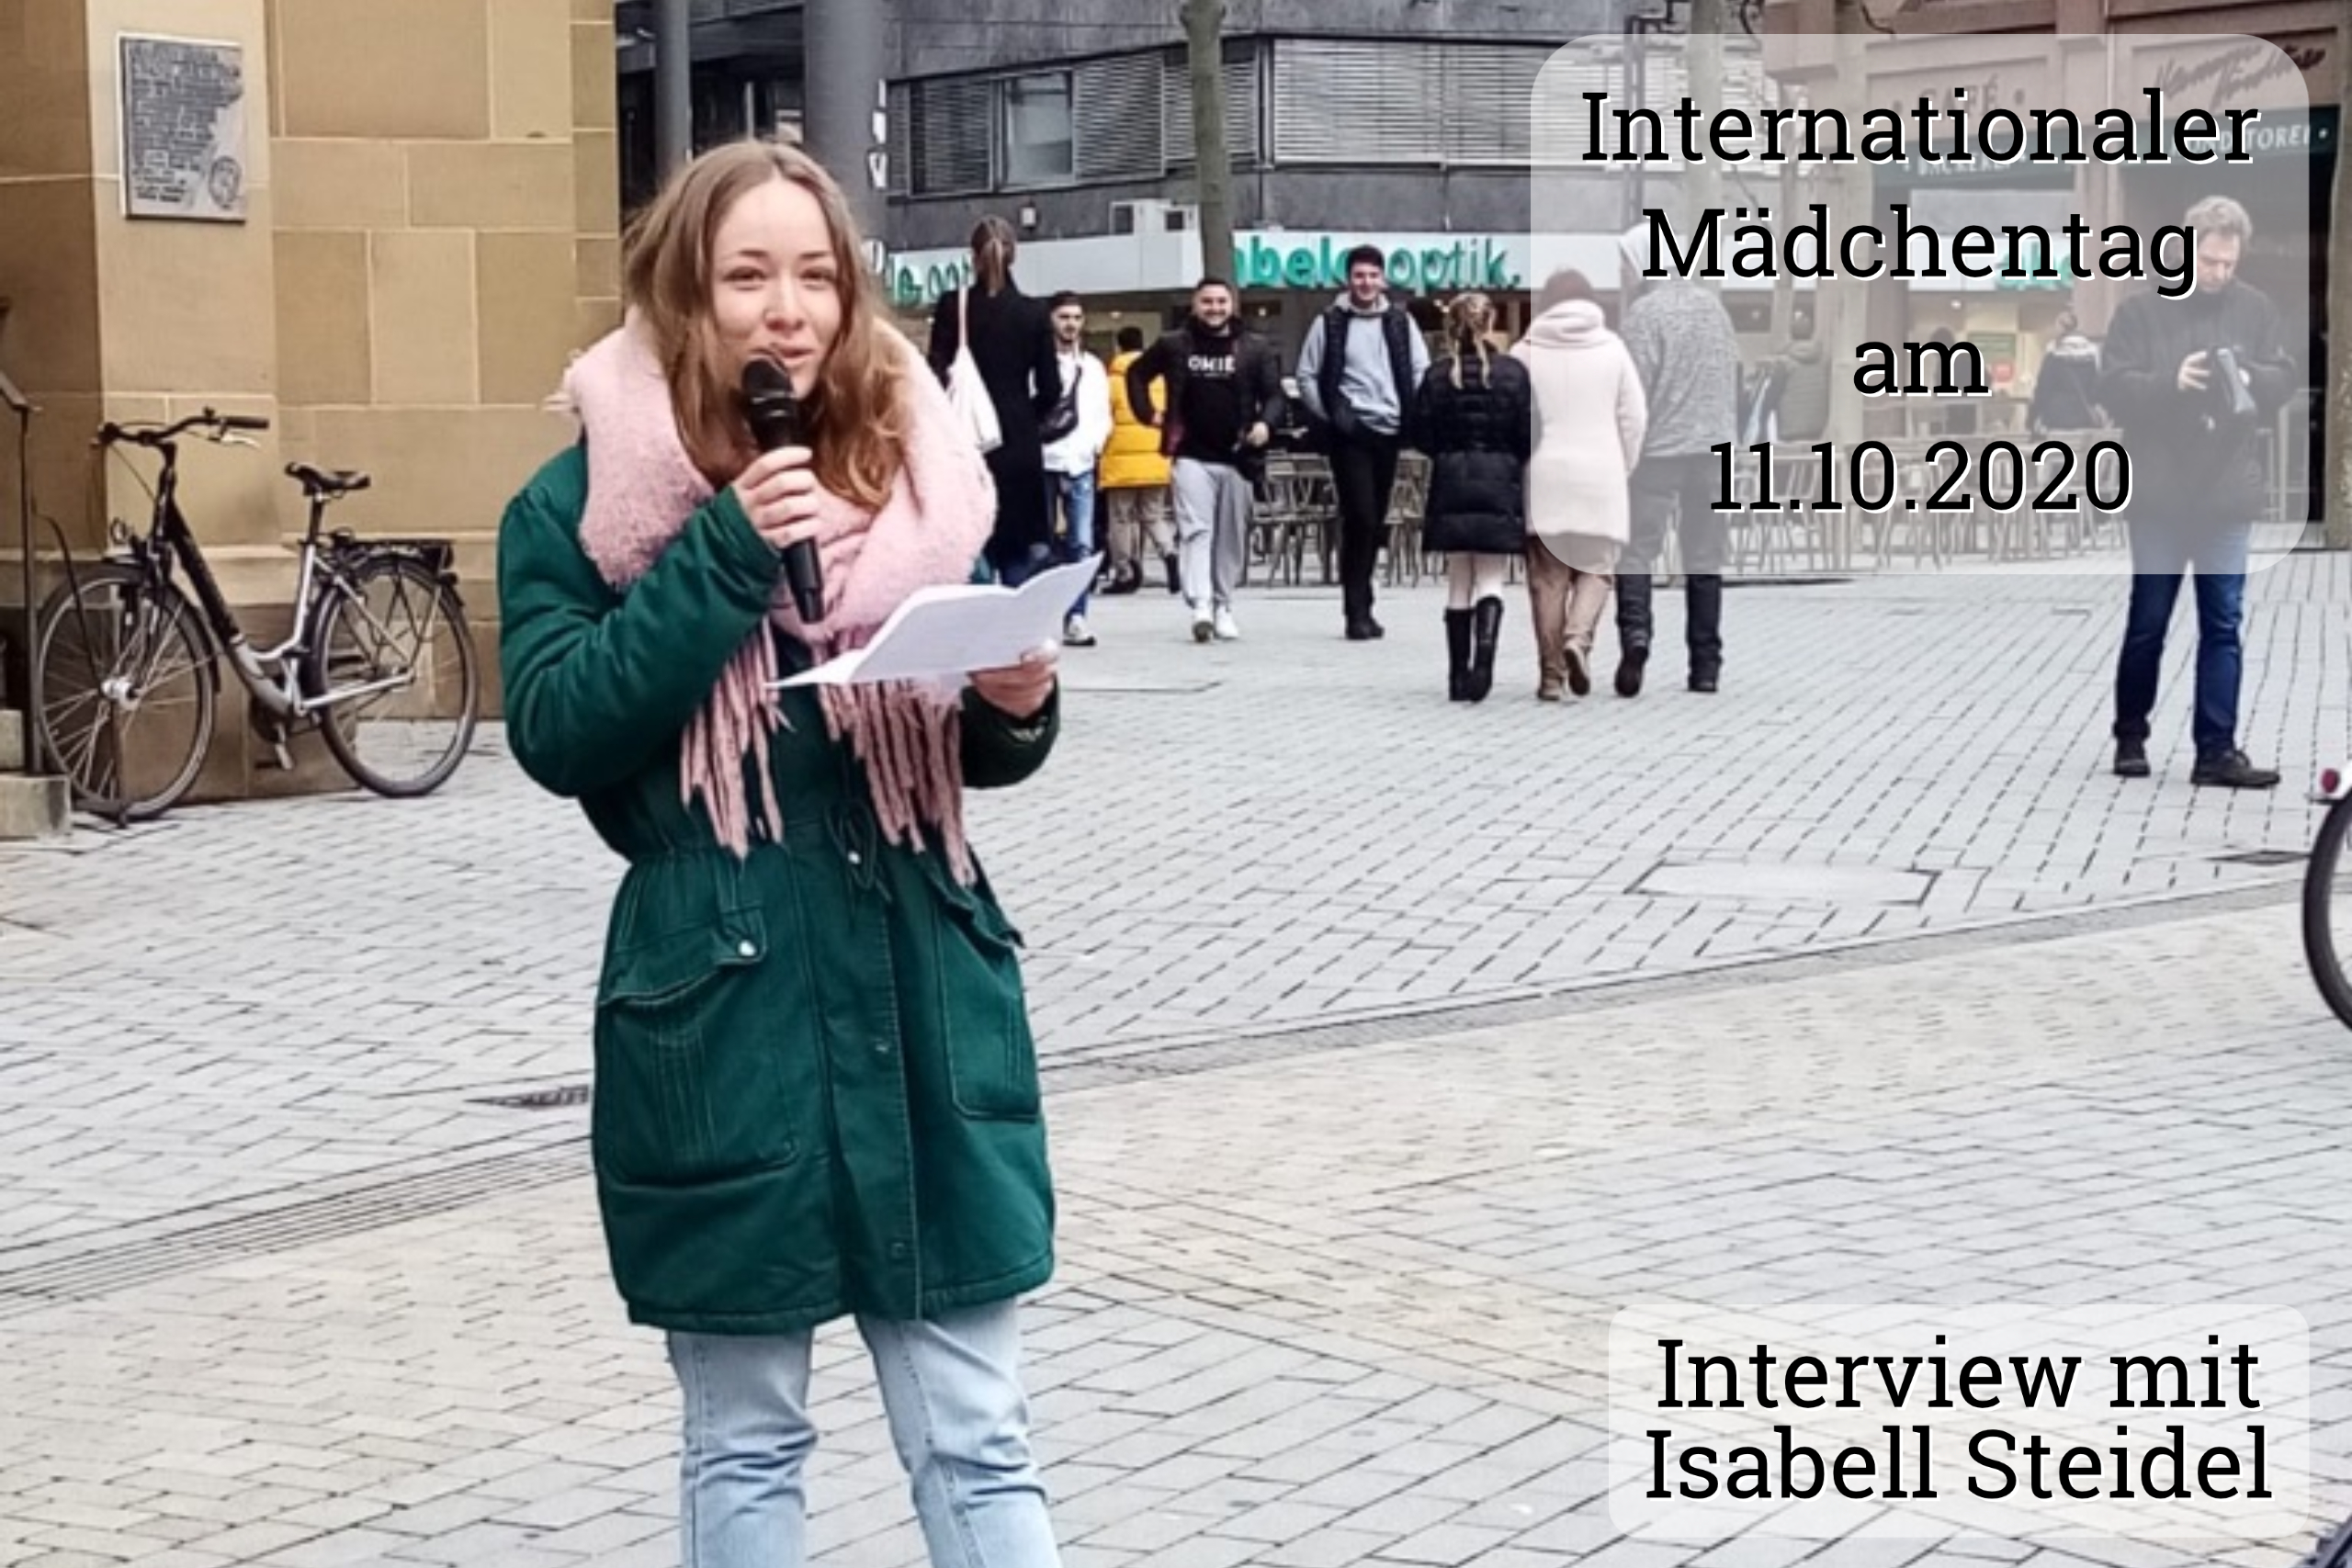 You are currently viewing Interview mit Isabell Steidel anlässlich des Internationalen Mädchentags am 11.10.2020